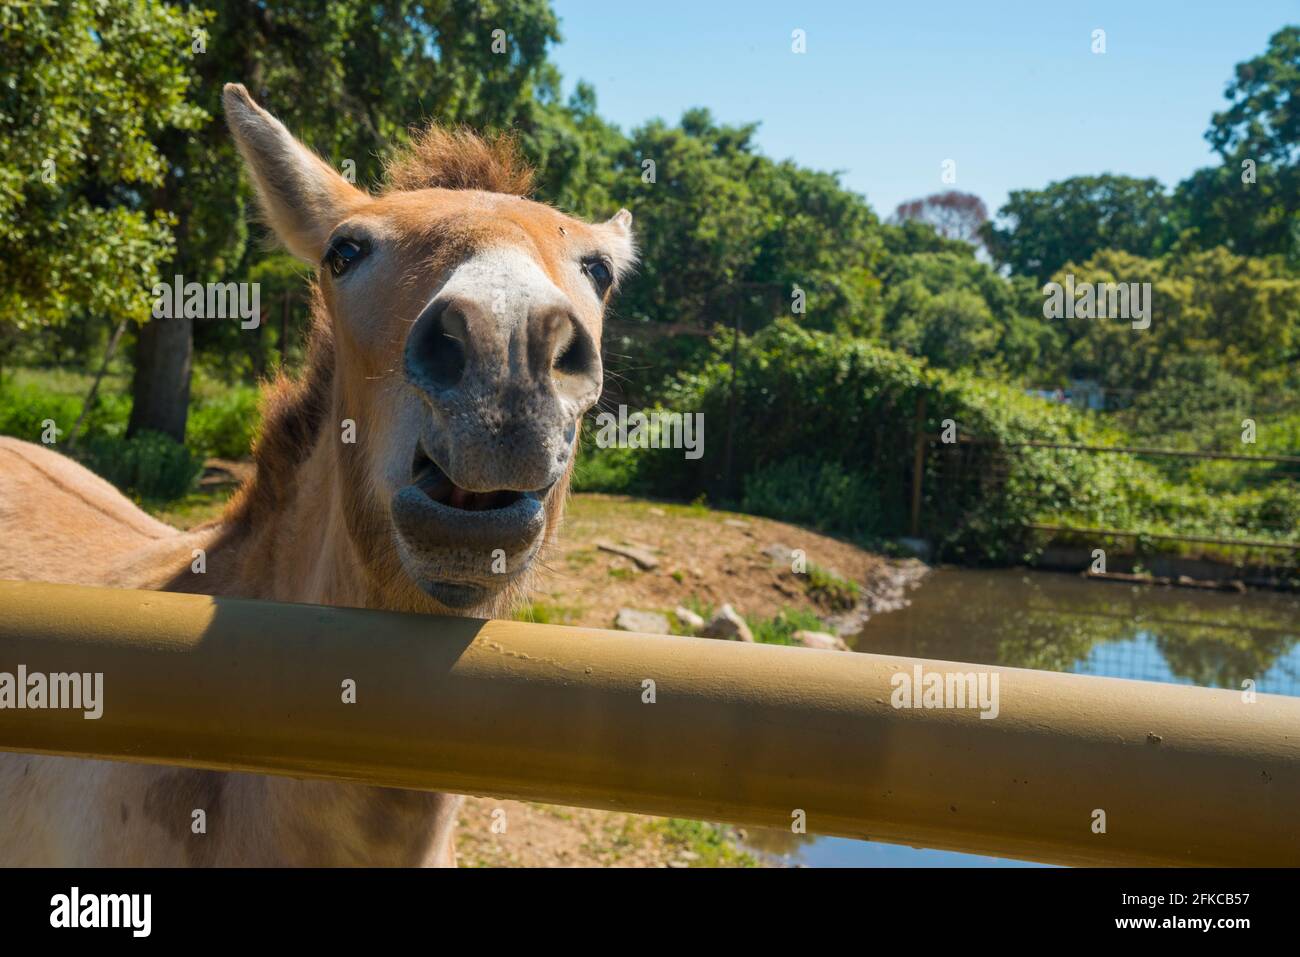 Cheval de Przewalski. Safari Madrid, Aldea del Fresno, province de Madrid, Espagne. Banque D'Images